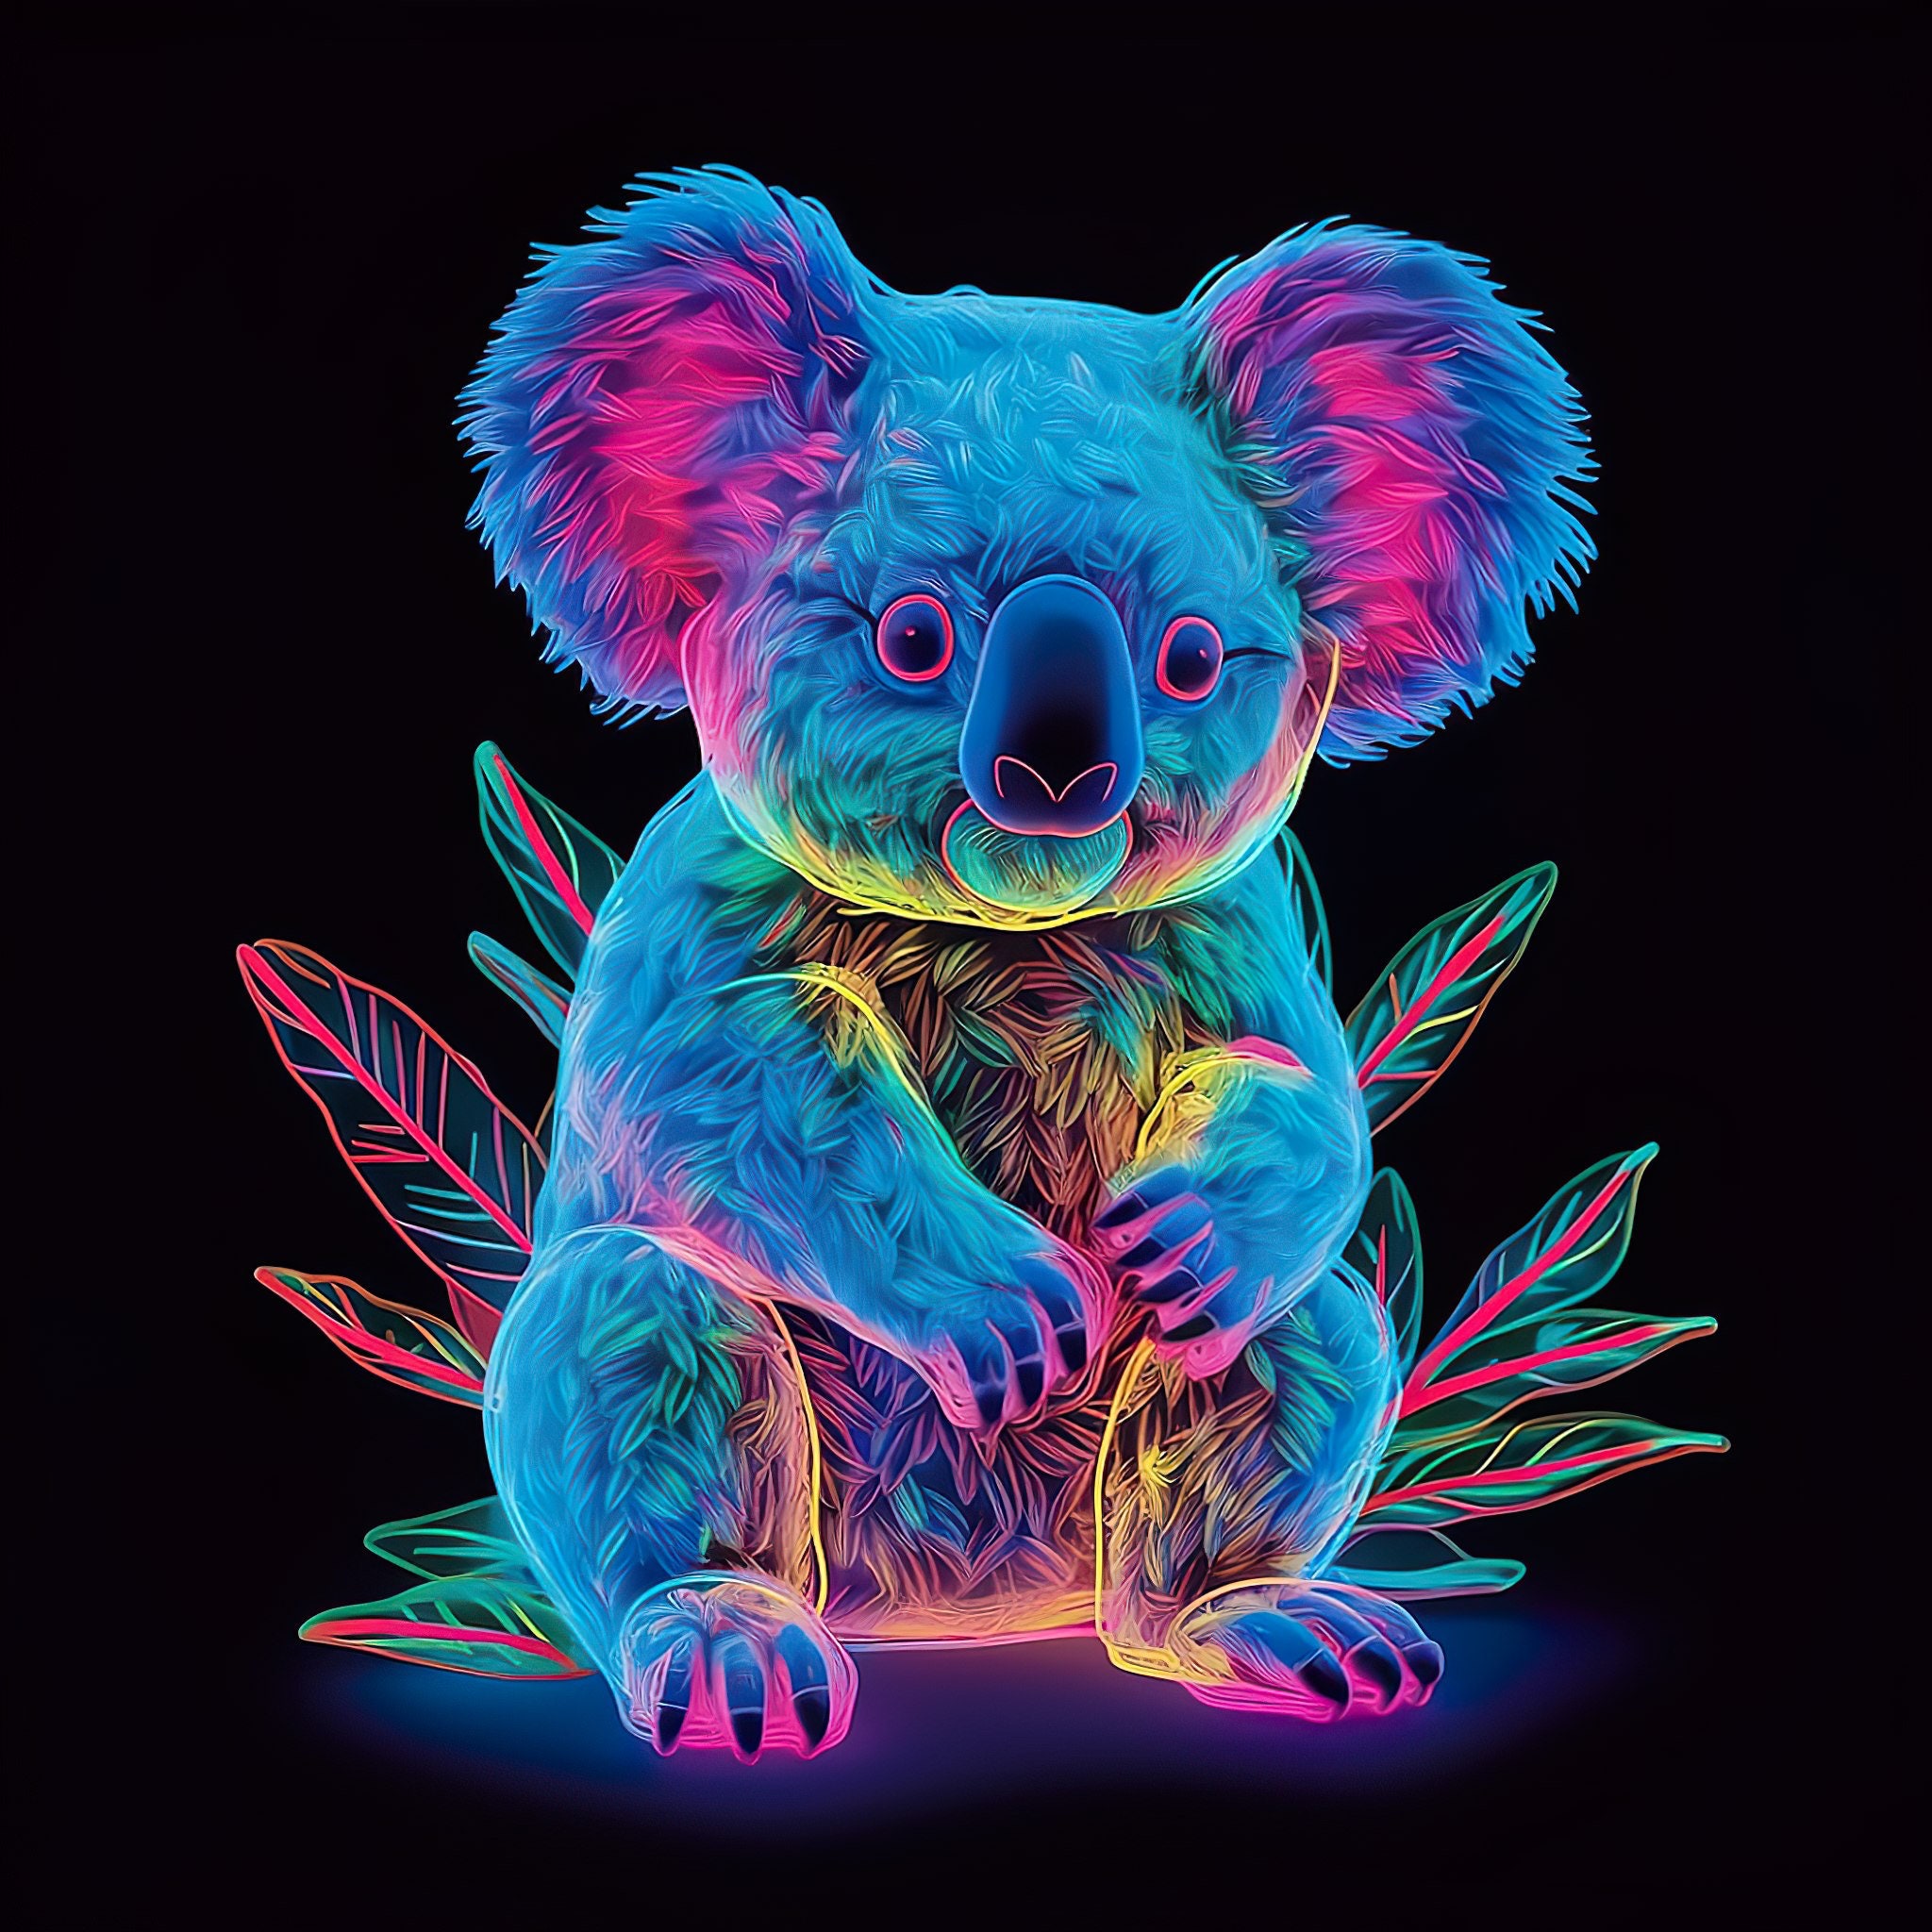 Rainbow Koala Wearing Love Heart Glasses Framed Print